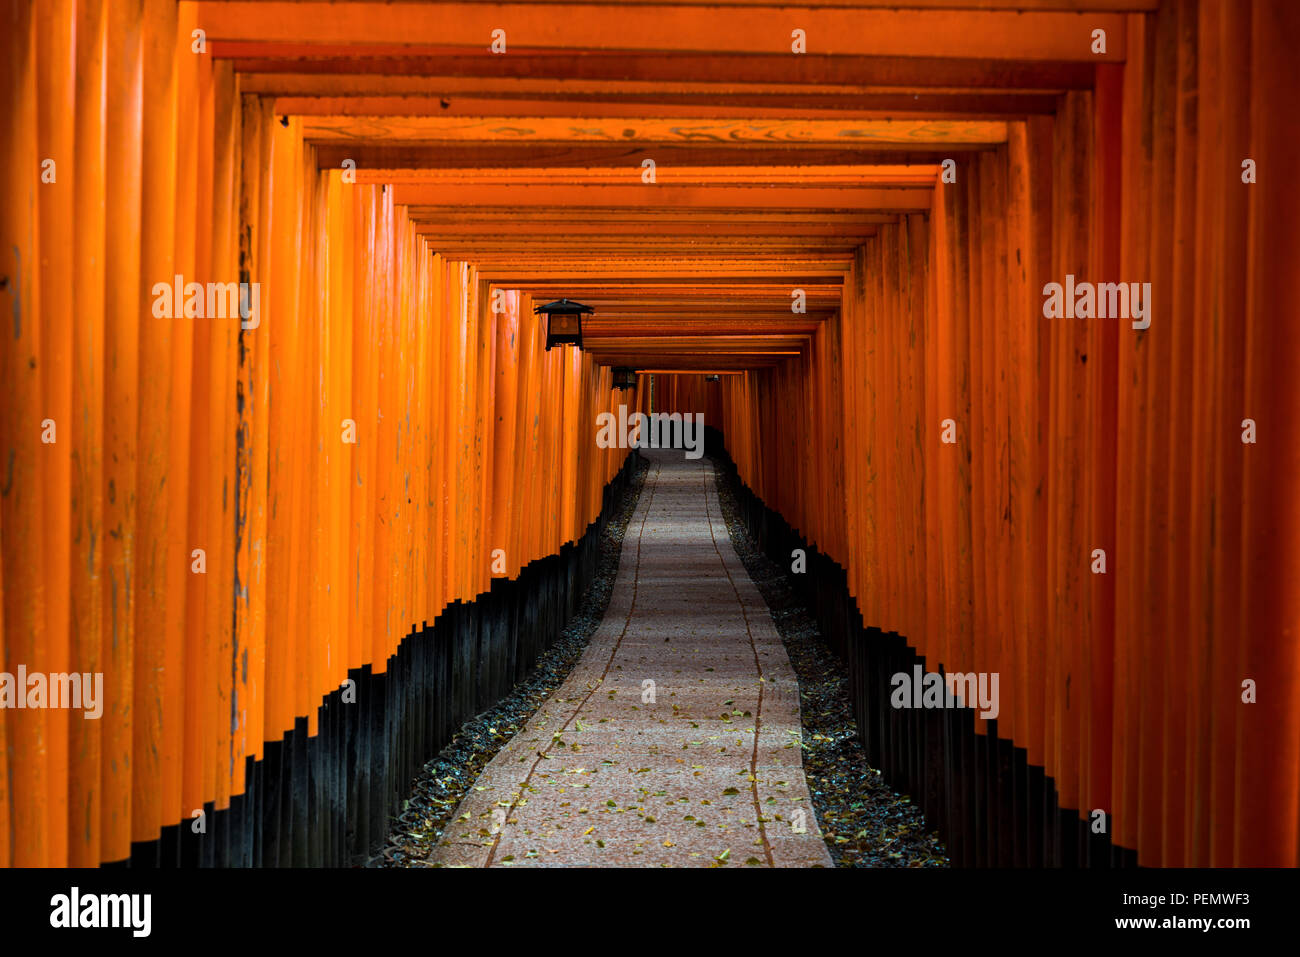 Tori rouge Gate au Sanctuaire Fushimi Inari à Kyoto, au Japon. Banque D'Images